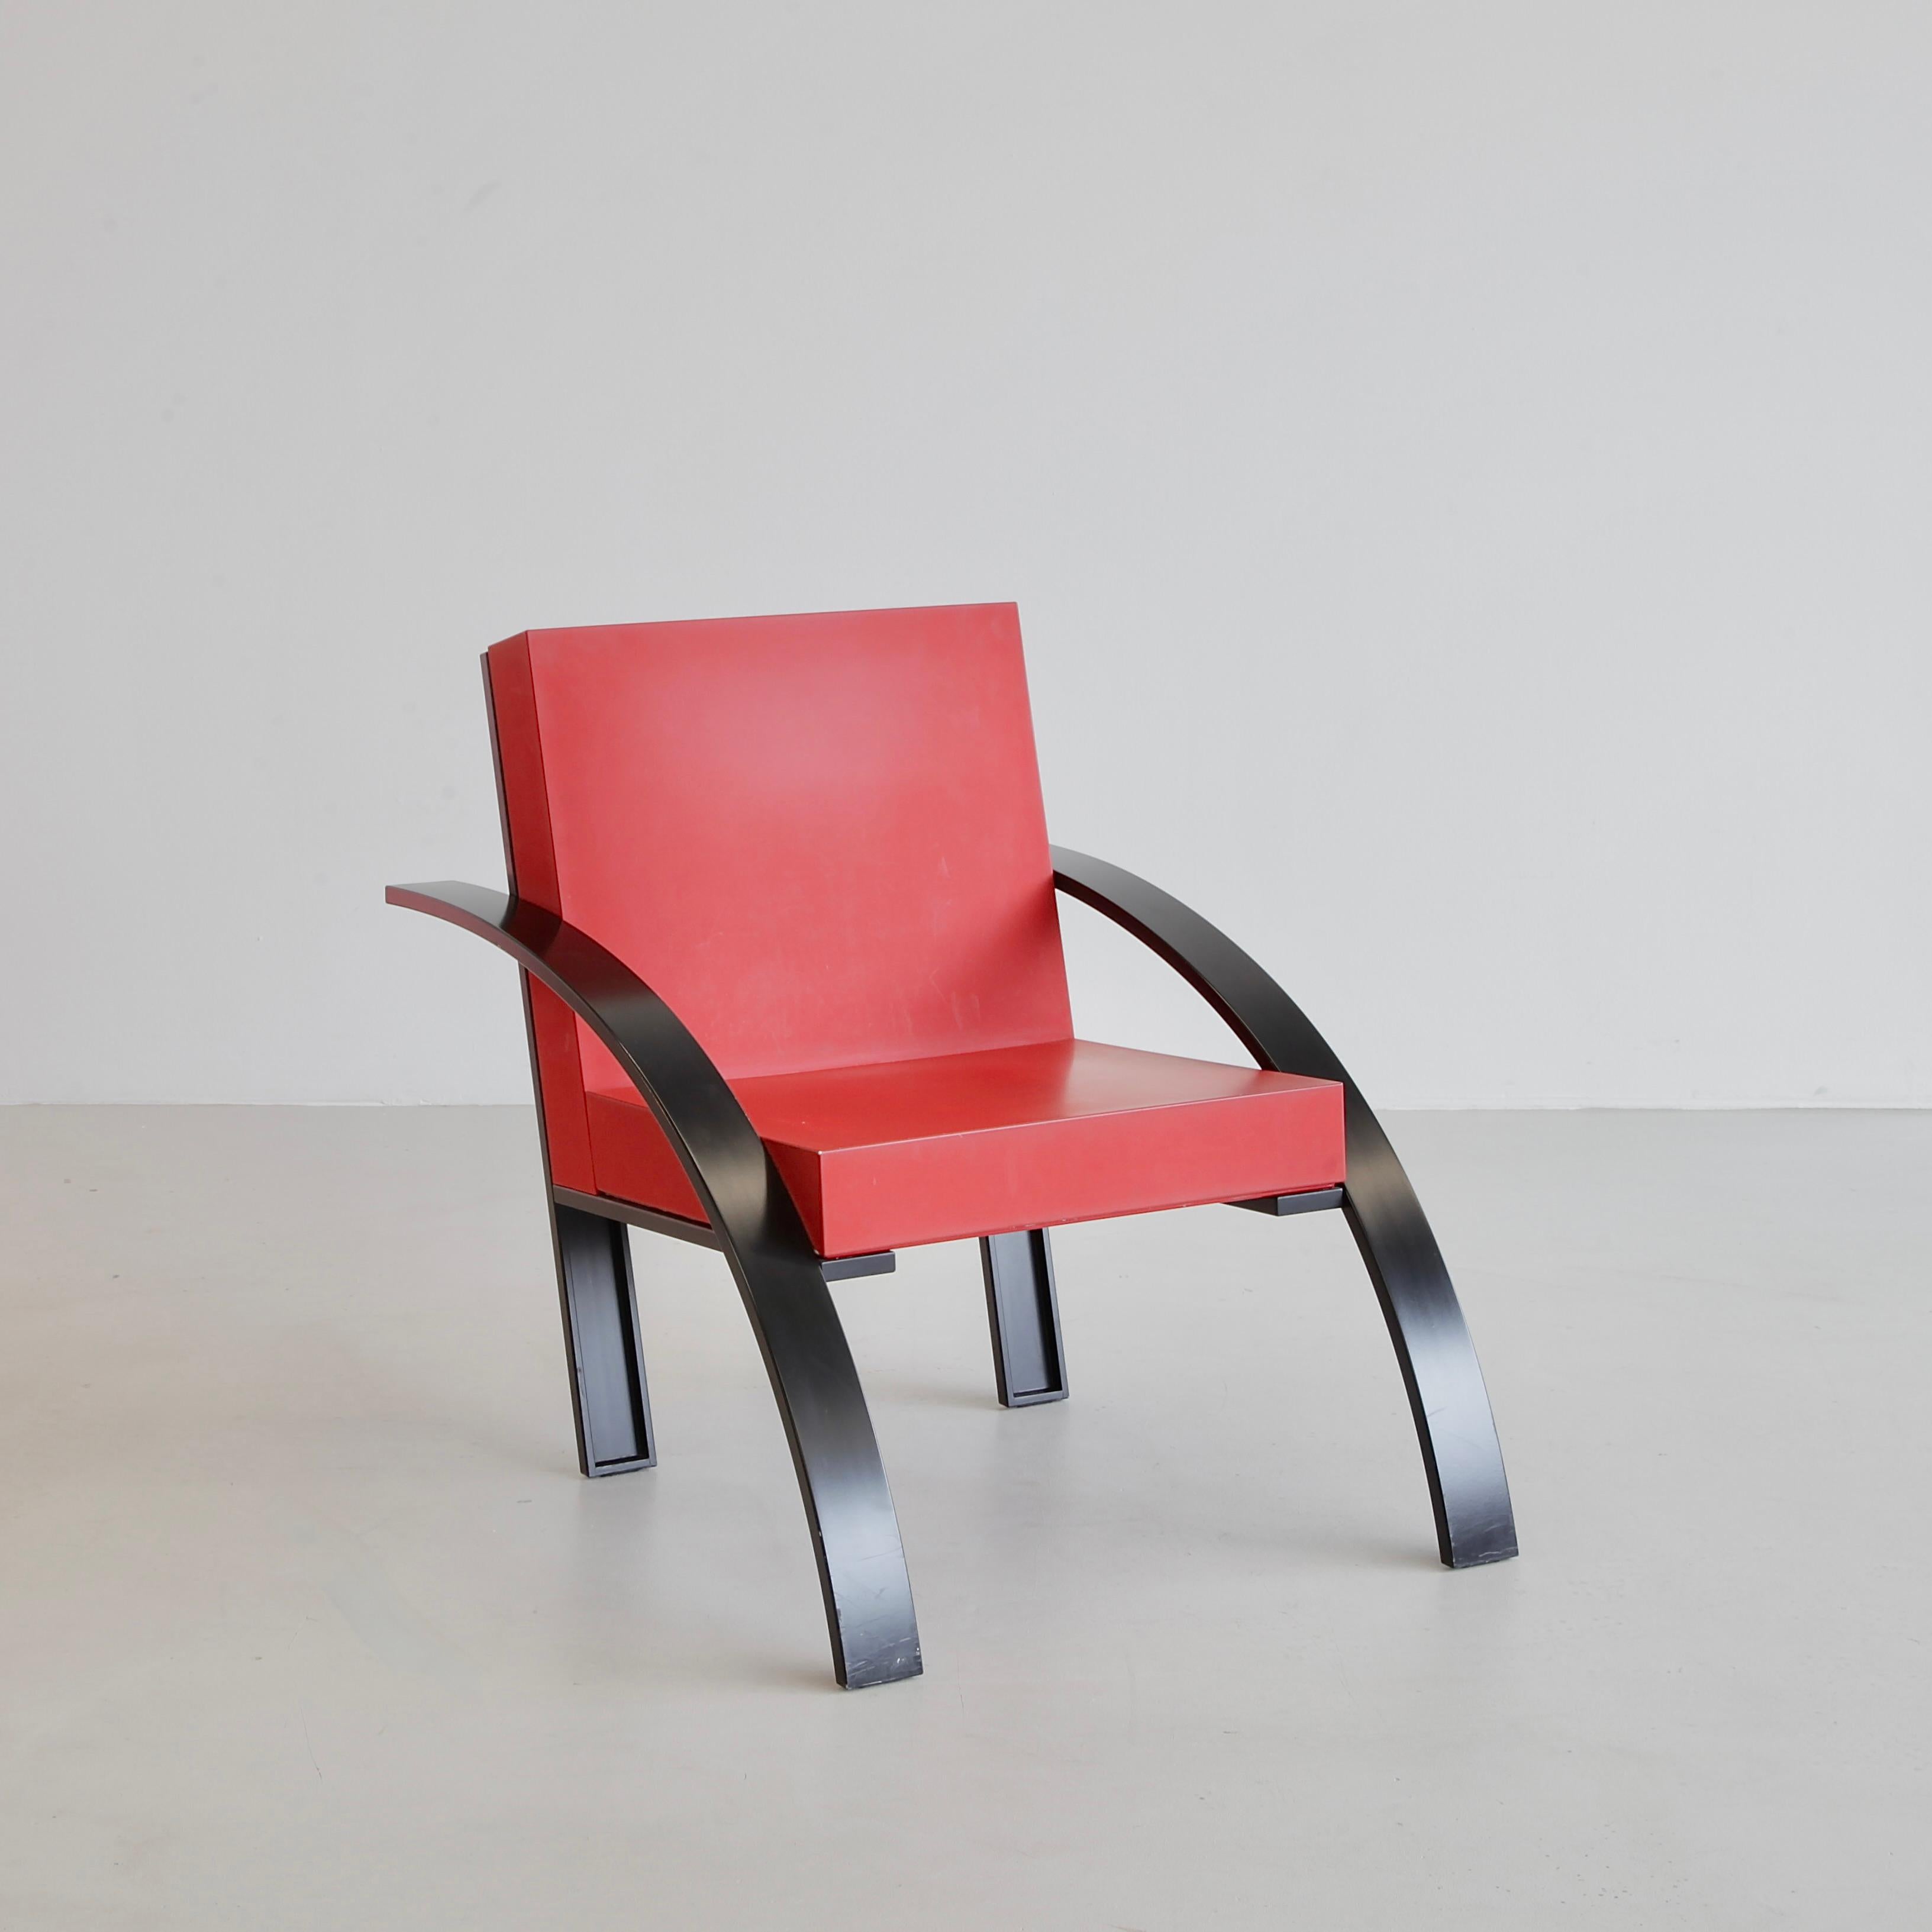 Fin du 20e siècle Paire de fauteuils « PAARIGI » d'Aldo Rosse, 1989